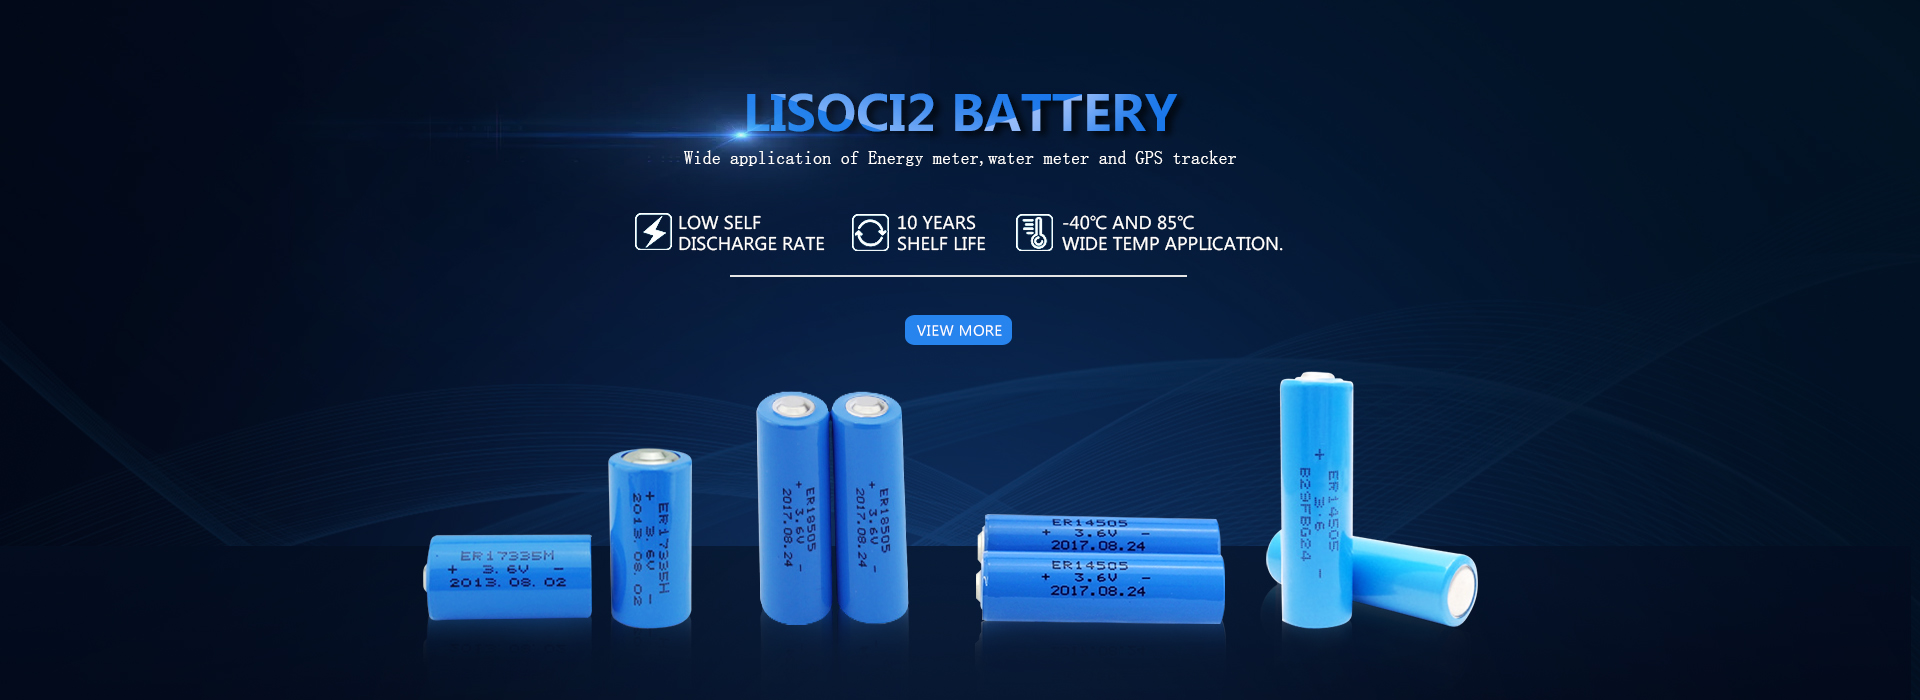 LiSoci2 fabrikatzaileak